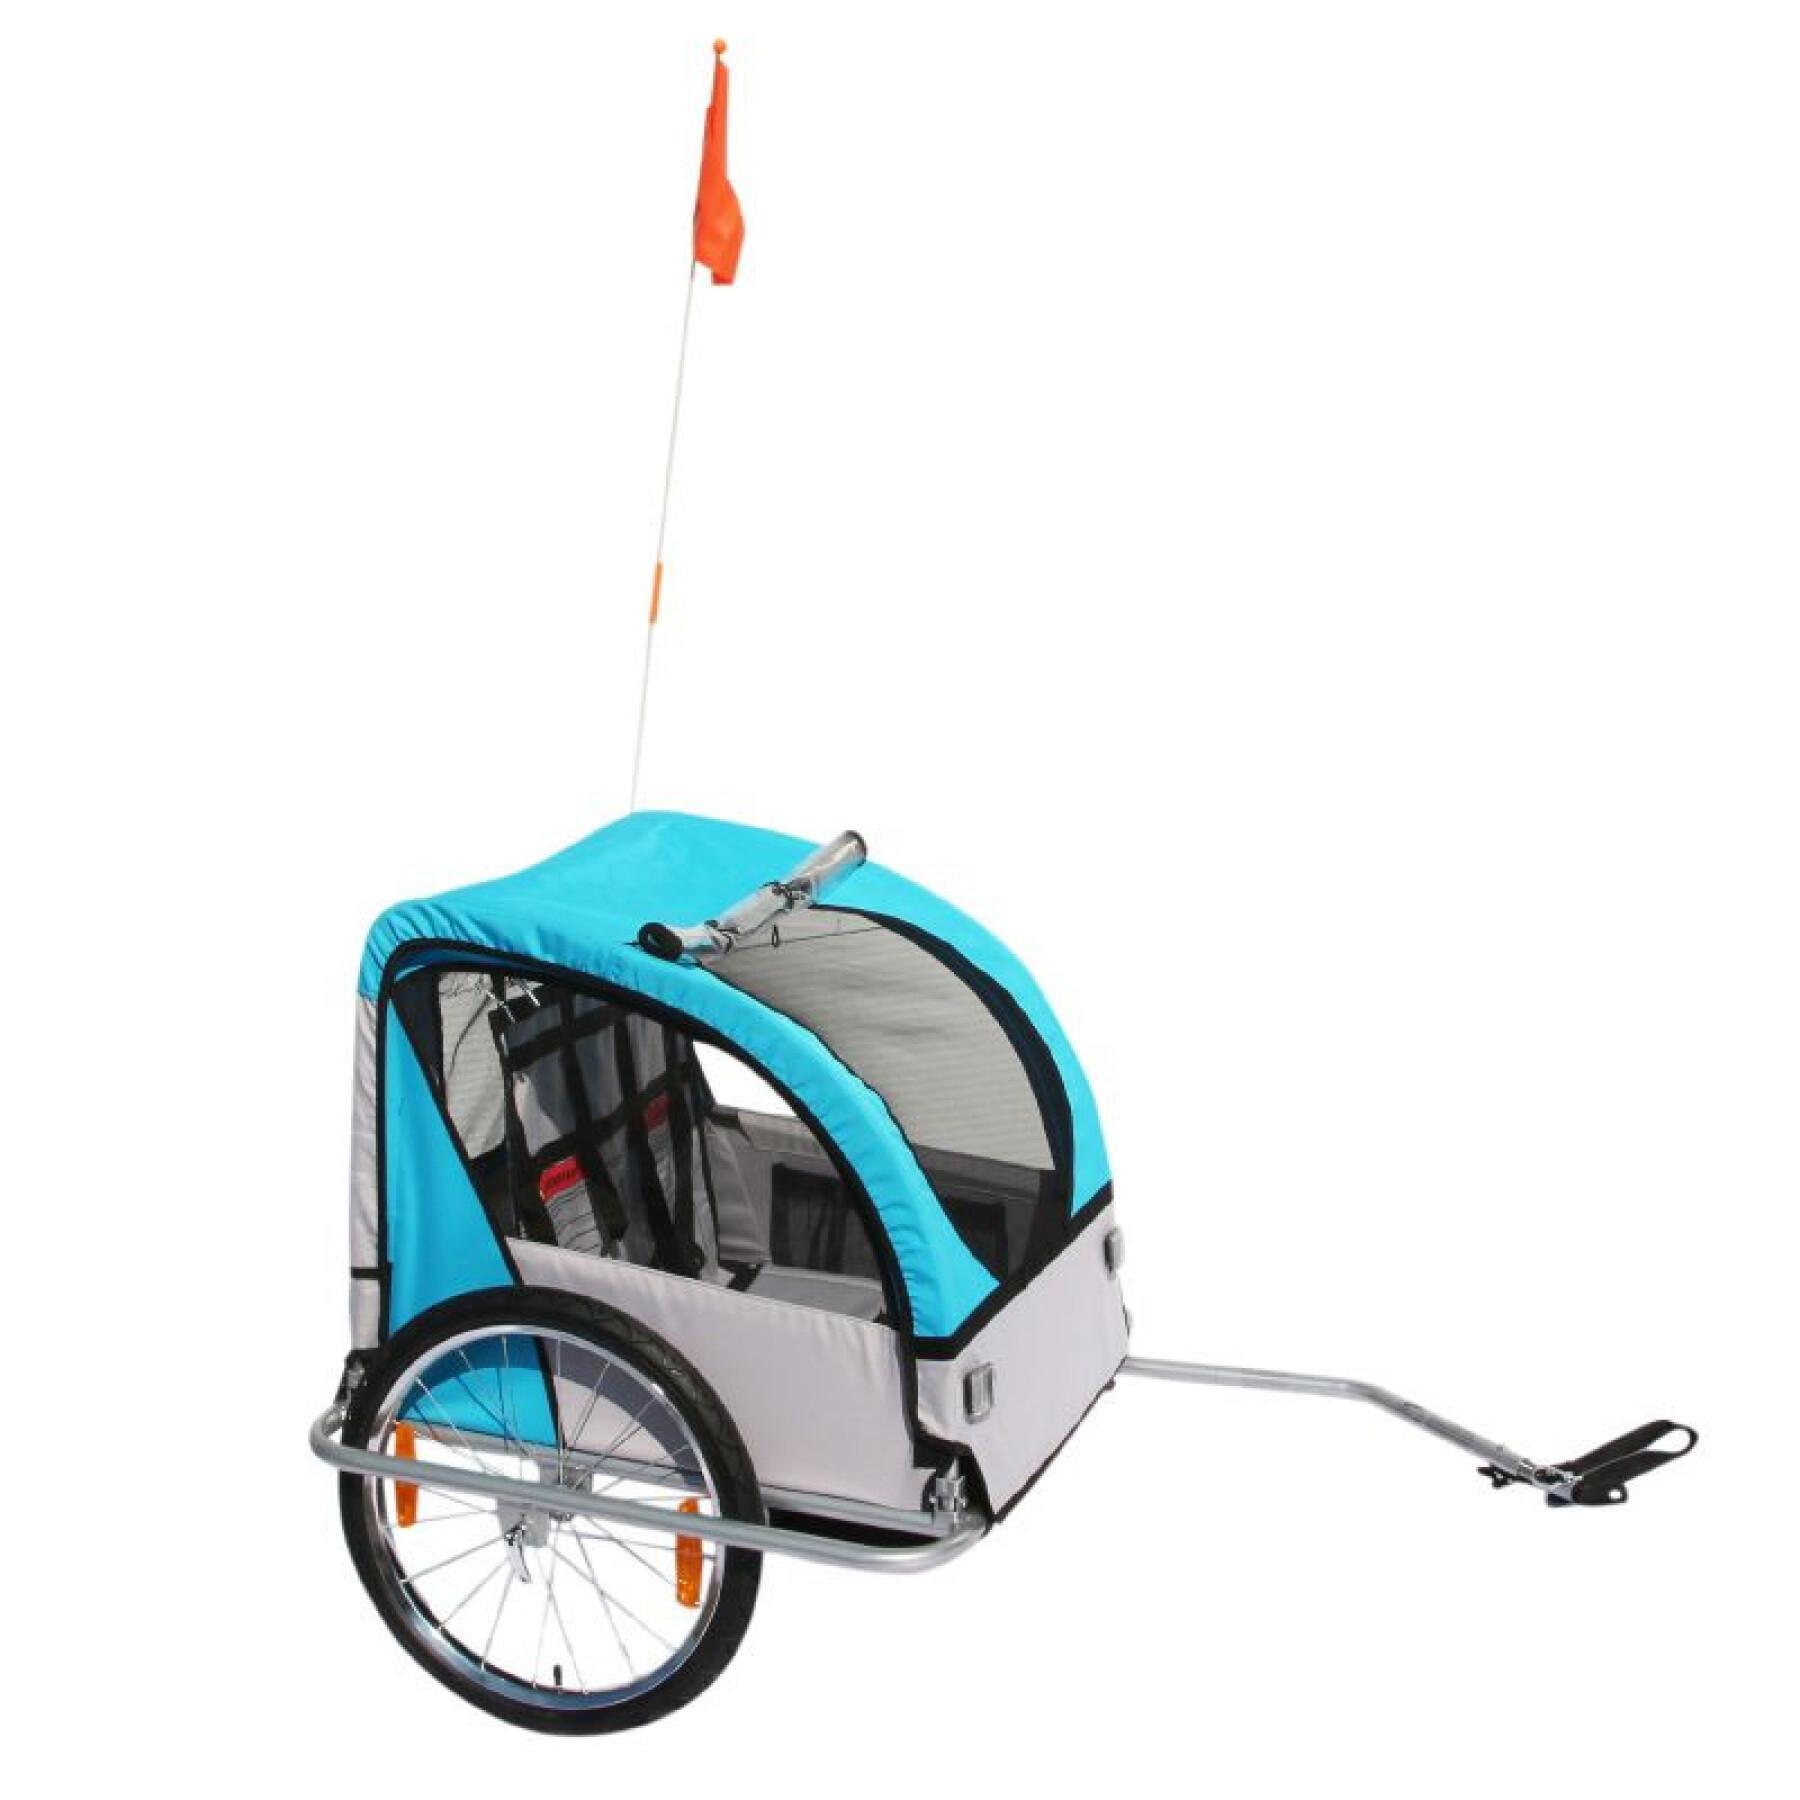 Täckt cykelkärra med plats för upp till 2 personer, låser och säkrar bakhjulets axel - snabb montering, inga verktyg krävs för barn P2R 45 Kg